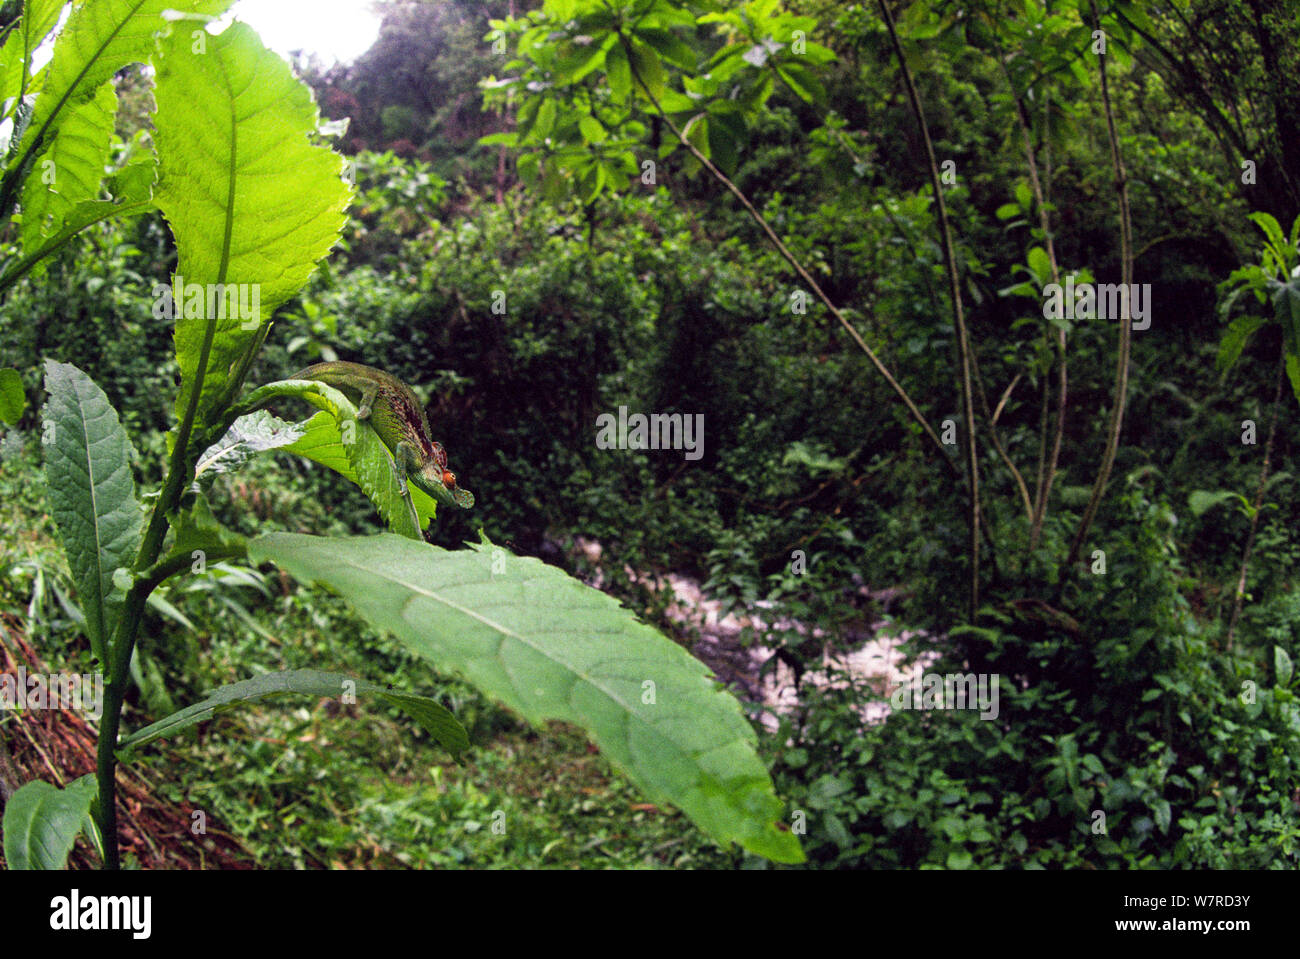 Camaleón (Ruwenzori Kinyongia xenorhina) en hábitat, en Kalonge 2138 metros, 'Mountains de la Luna' / Ruwenzori sector del Parque Nacional de Virunga, en la República Democrática del Congo. Foto de stock